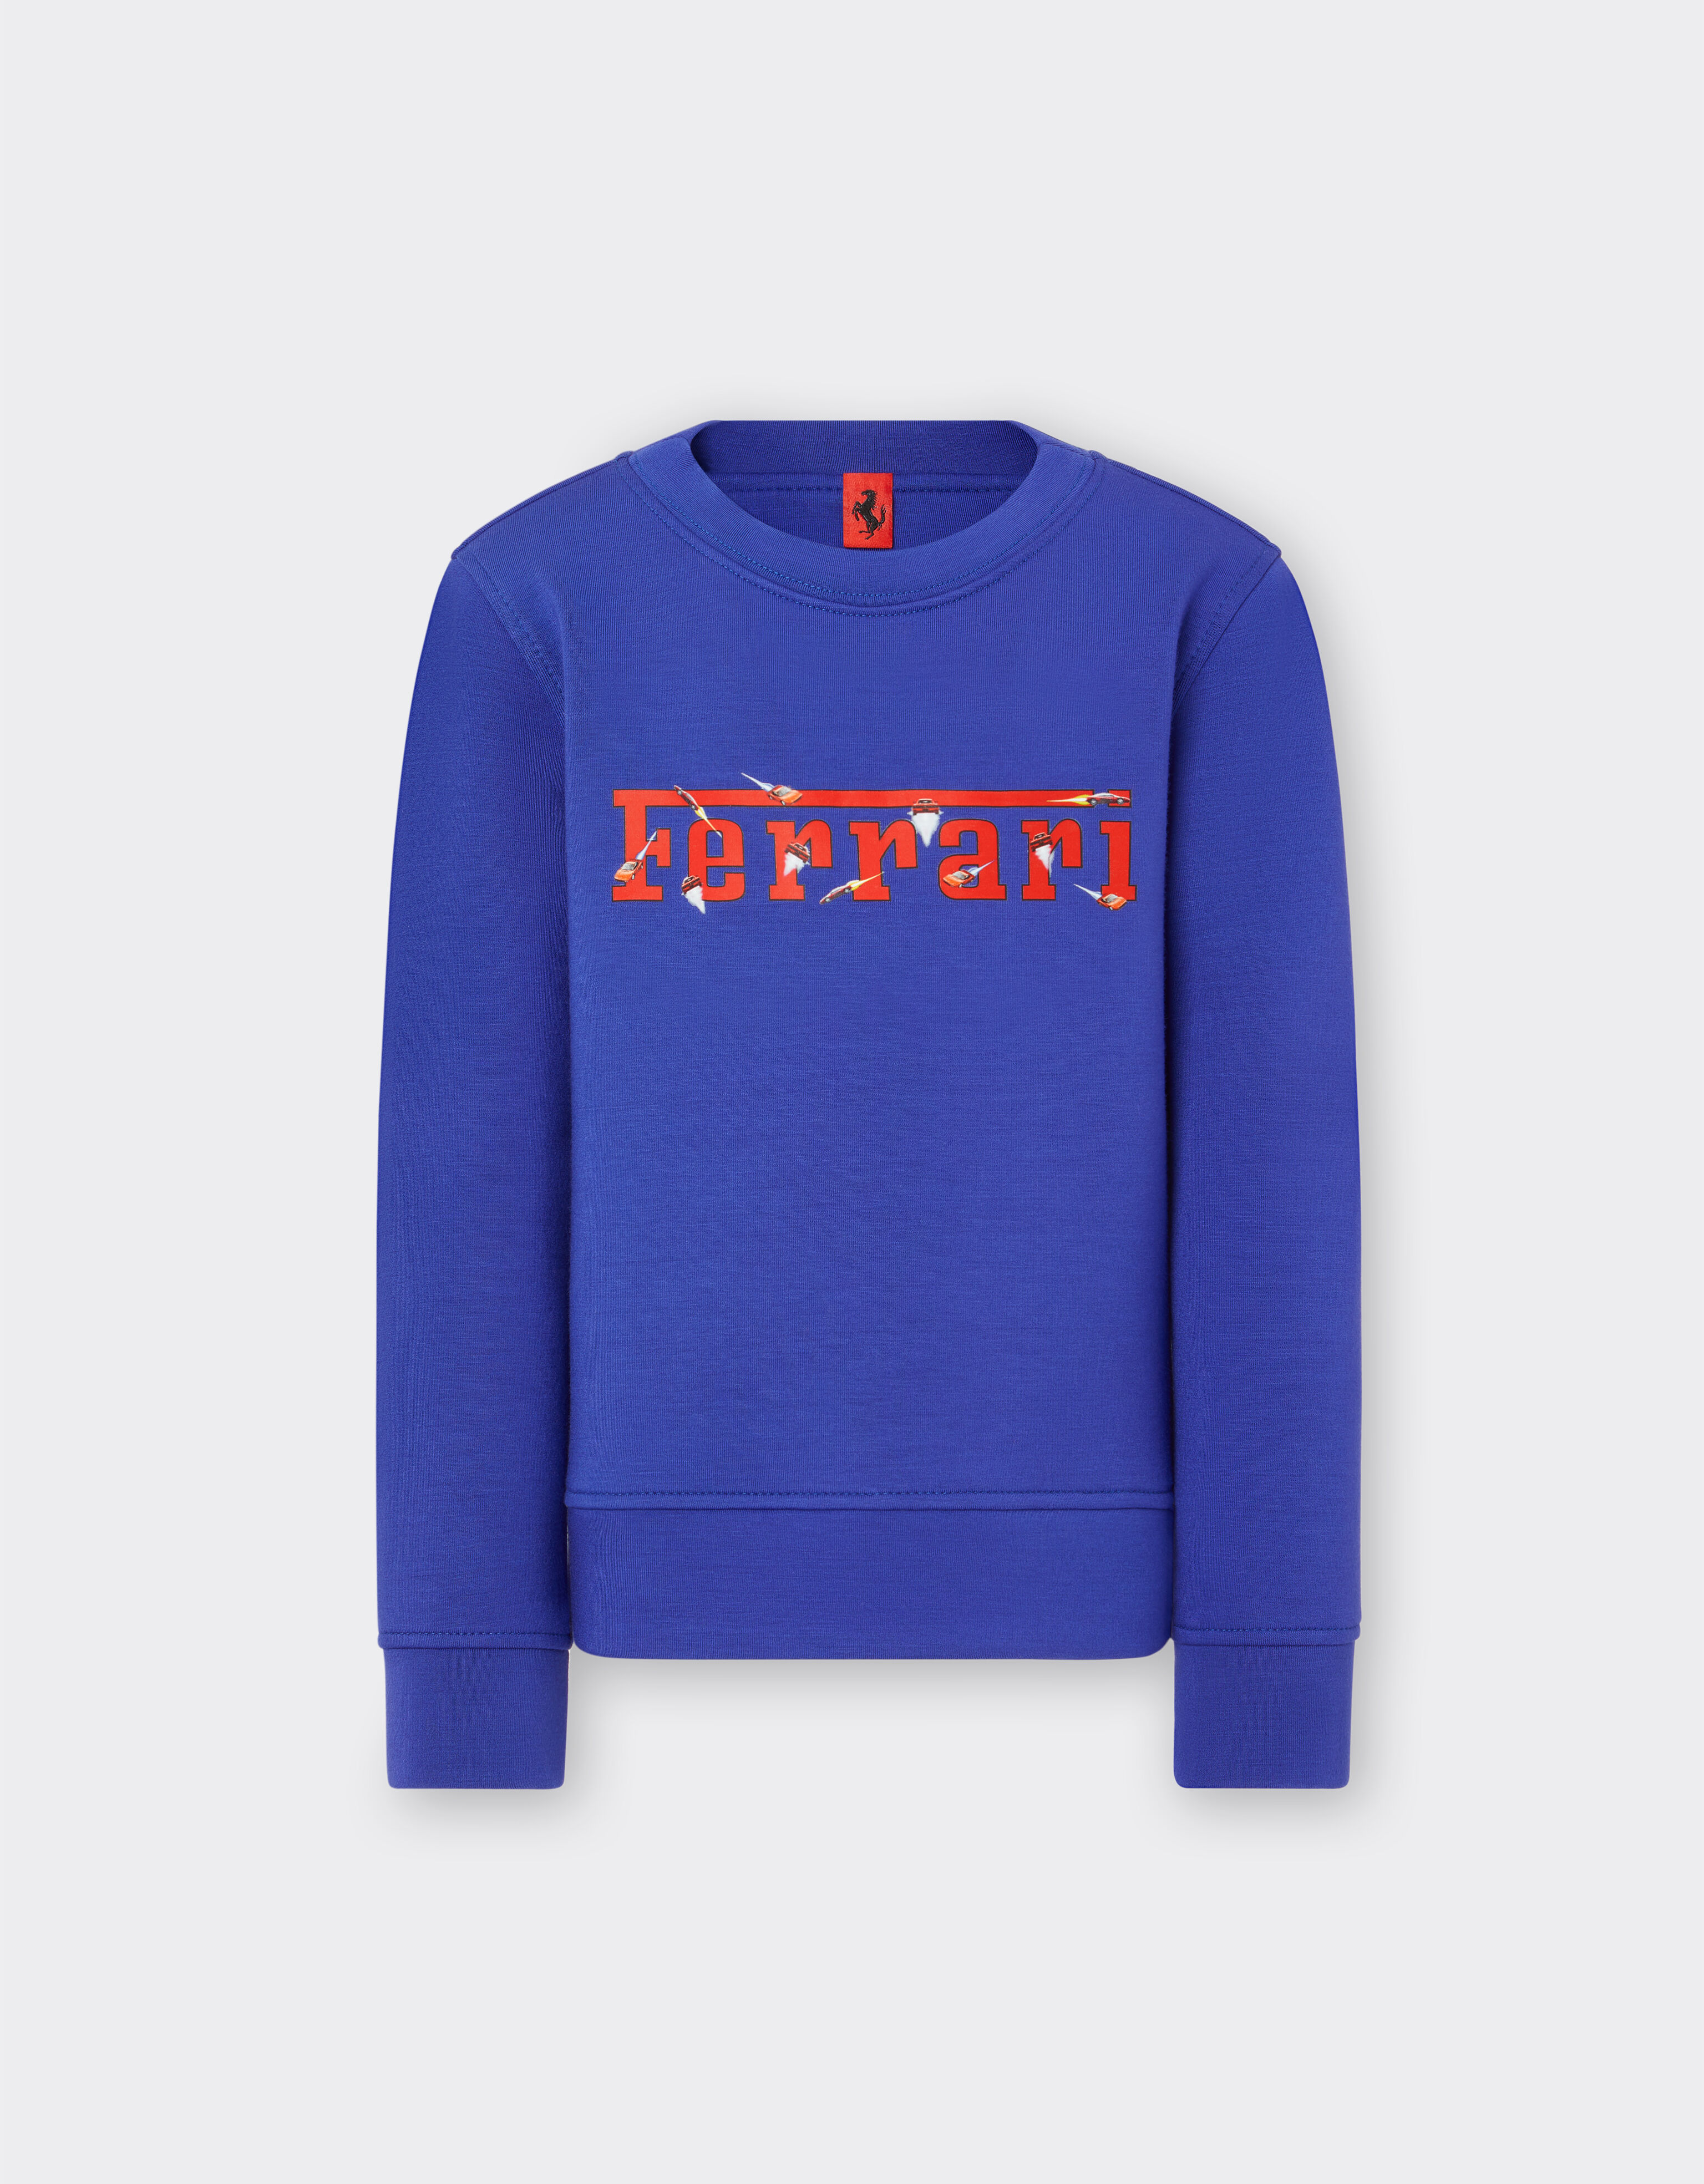 Ferrari Children’s scuba sweatshirt with Ferrari logo 古蓝色 20159fK